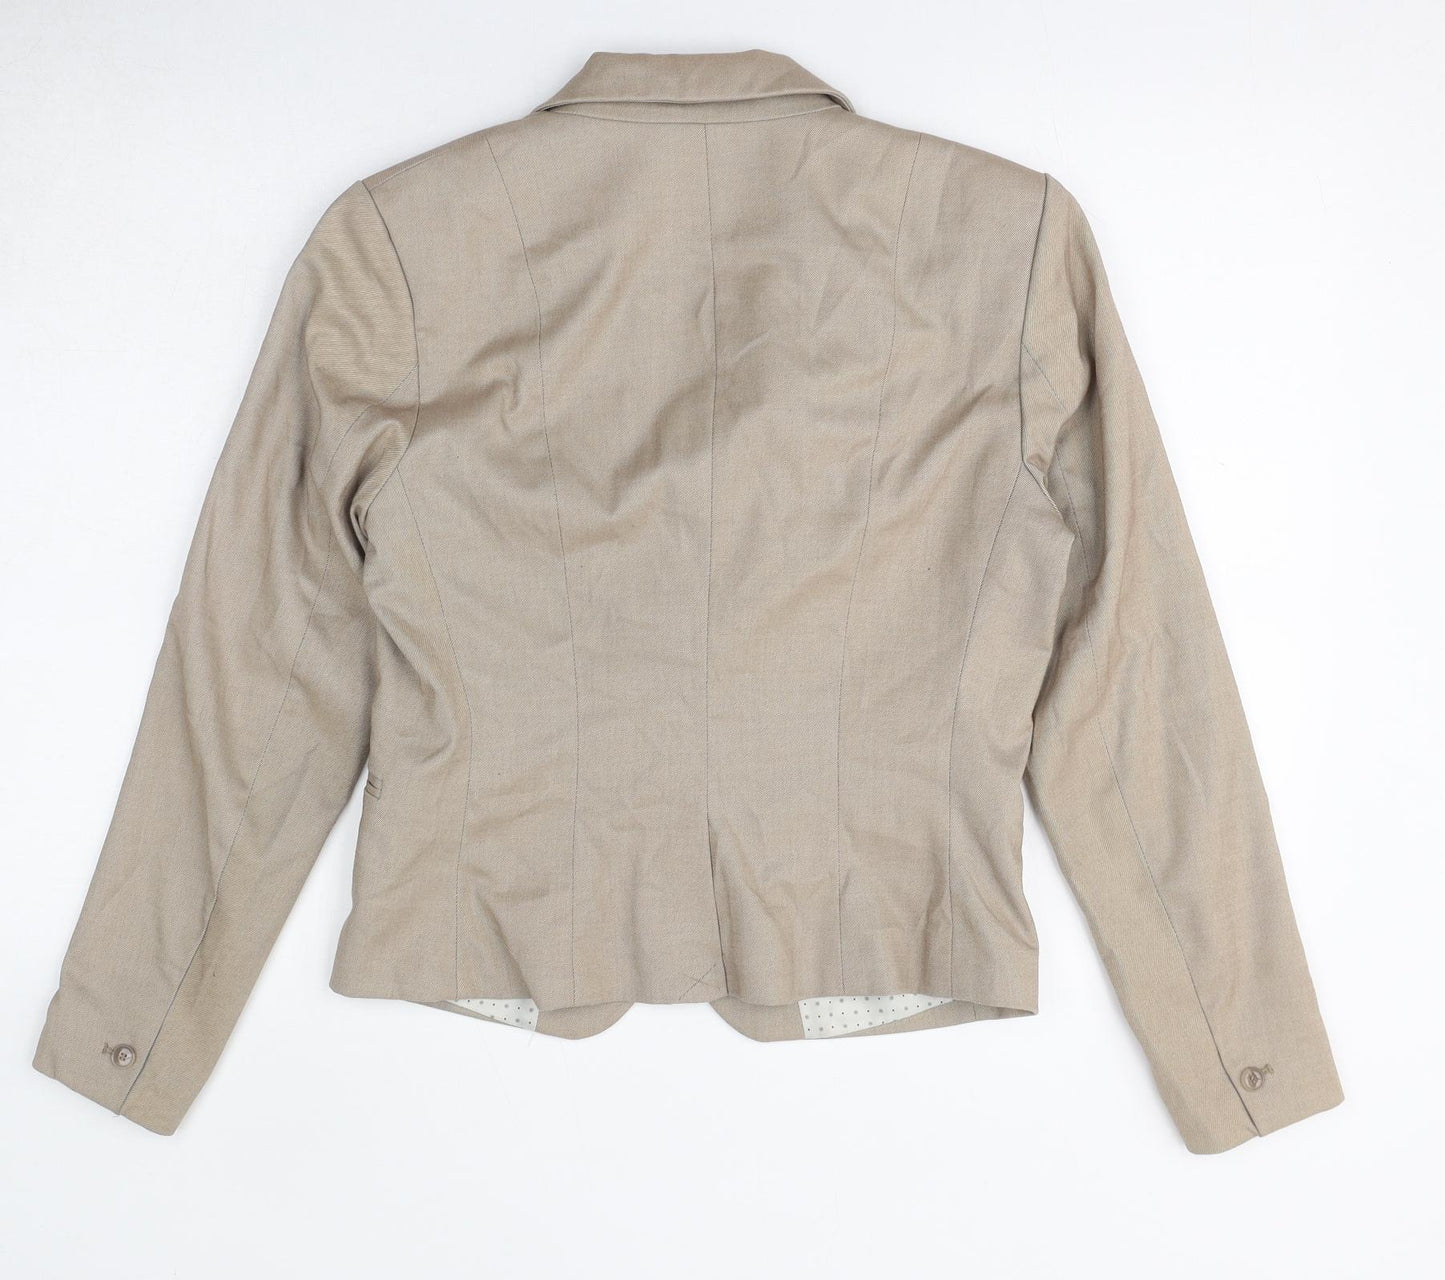 H&M Womens Beige Jacket Blazer Size 10 Button